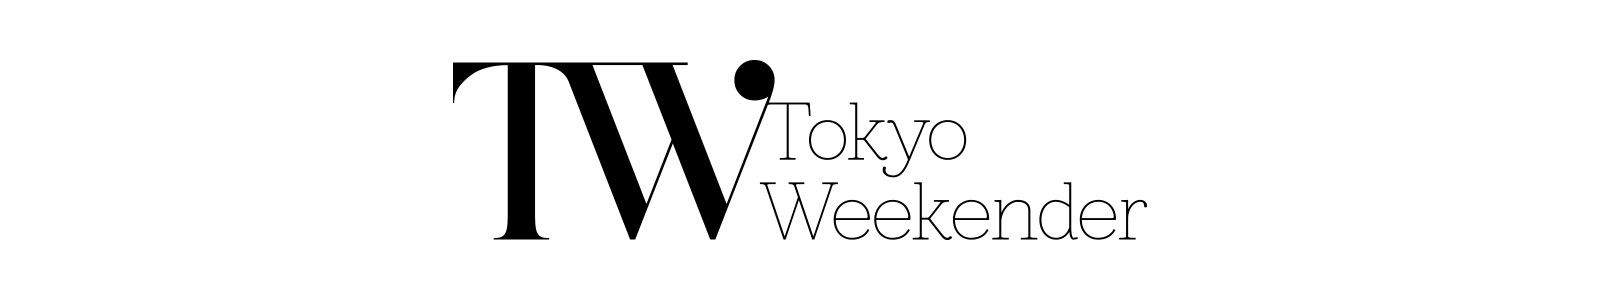 「Tokyo Weekender」Web版に掲載されました。